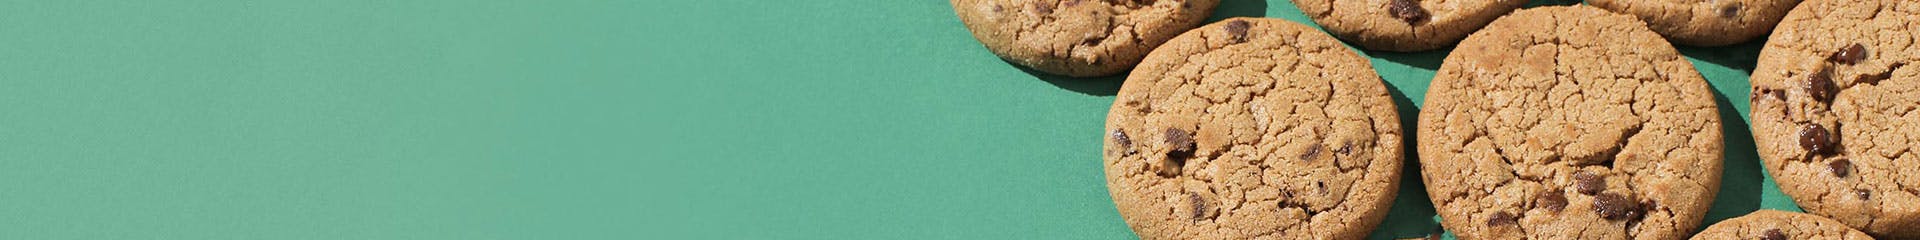 banner-cookies@2x